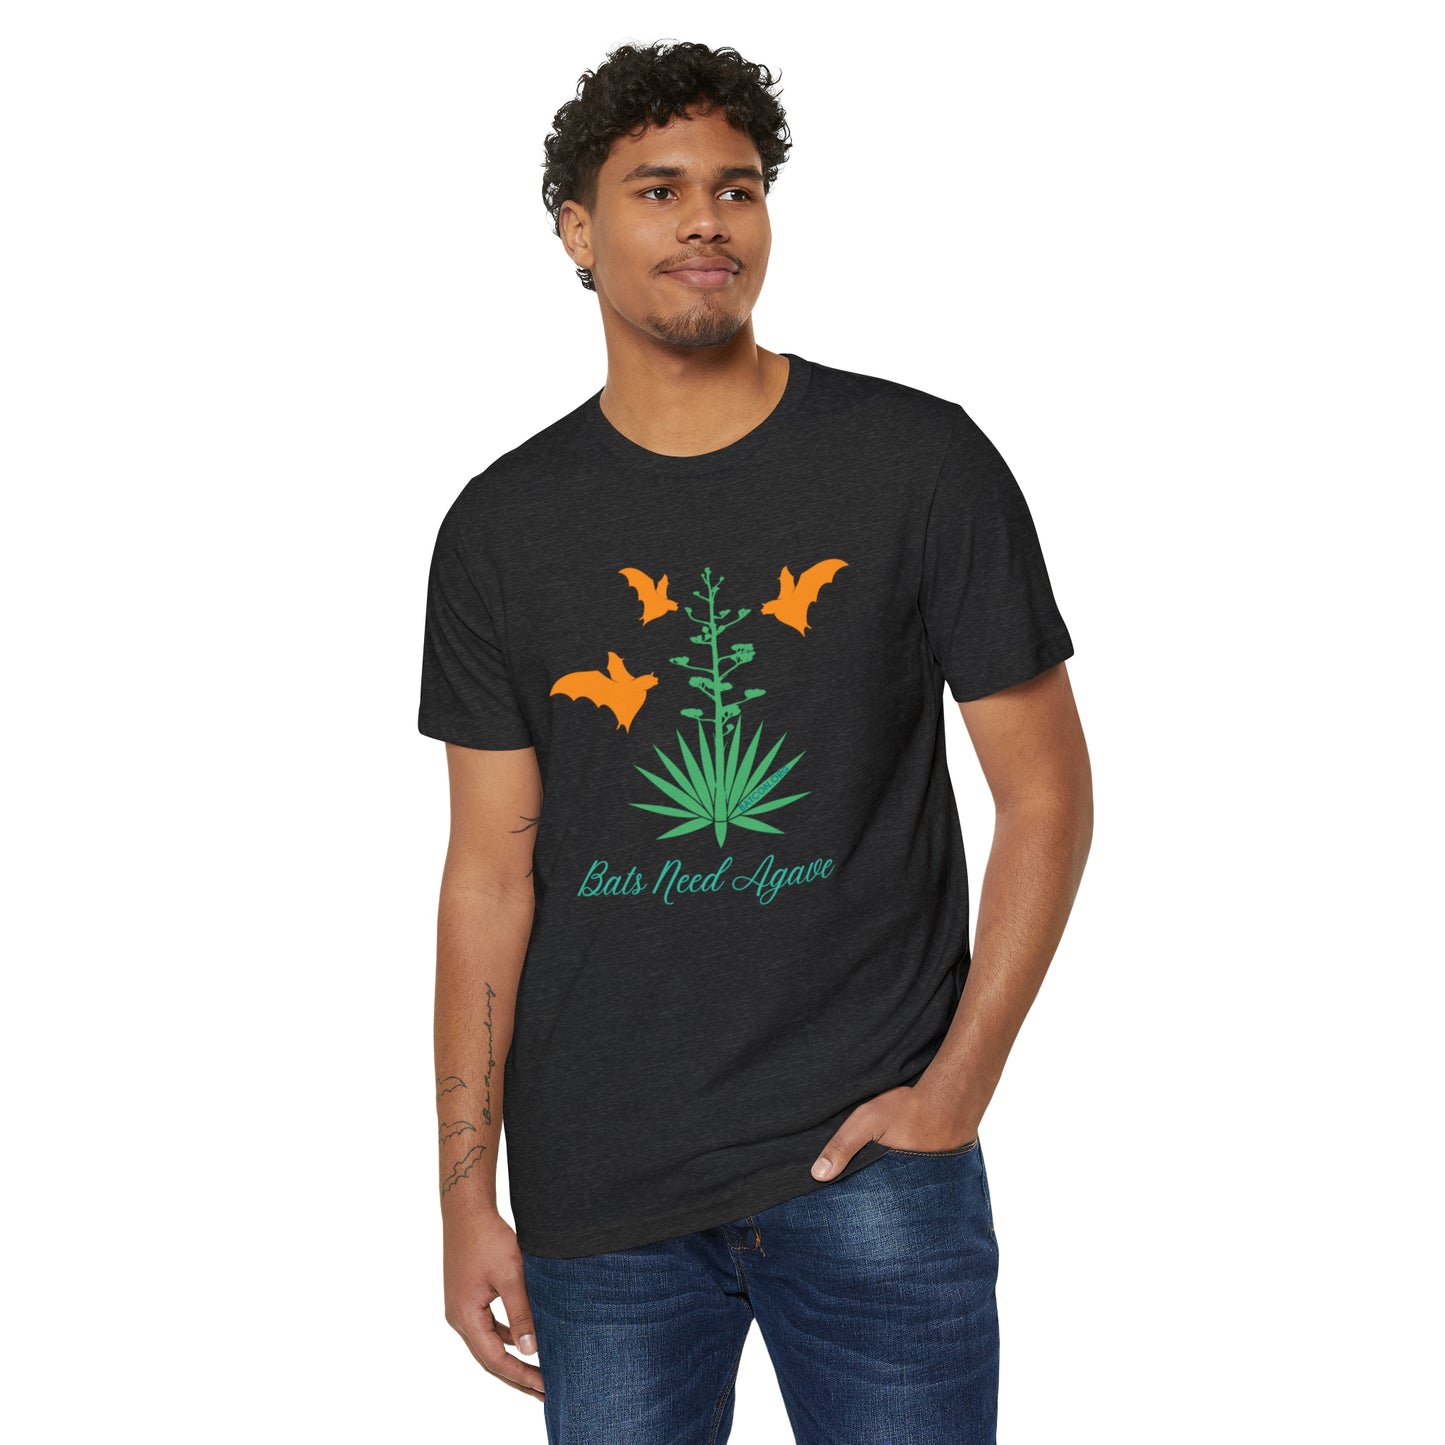 Colorful Silhouettes - Camiseta unisex orgánica reciclada